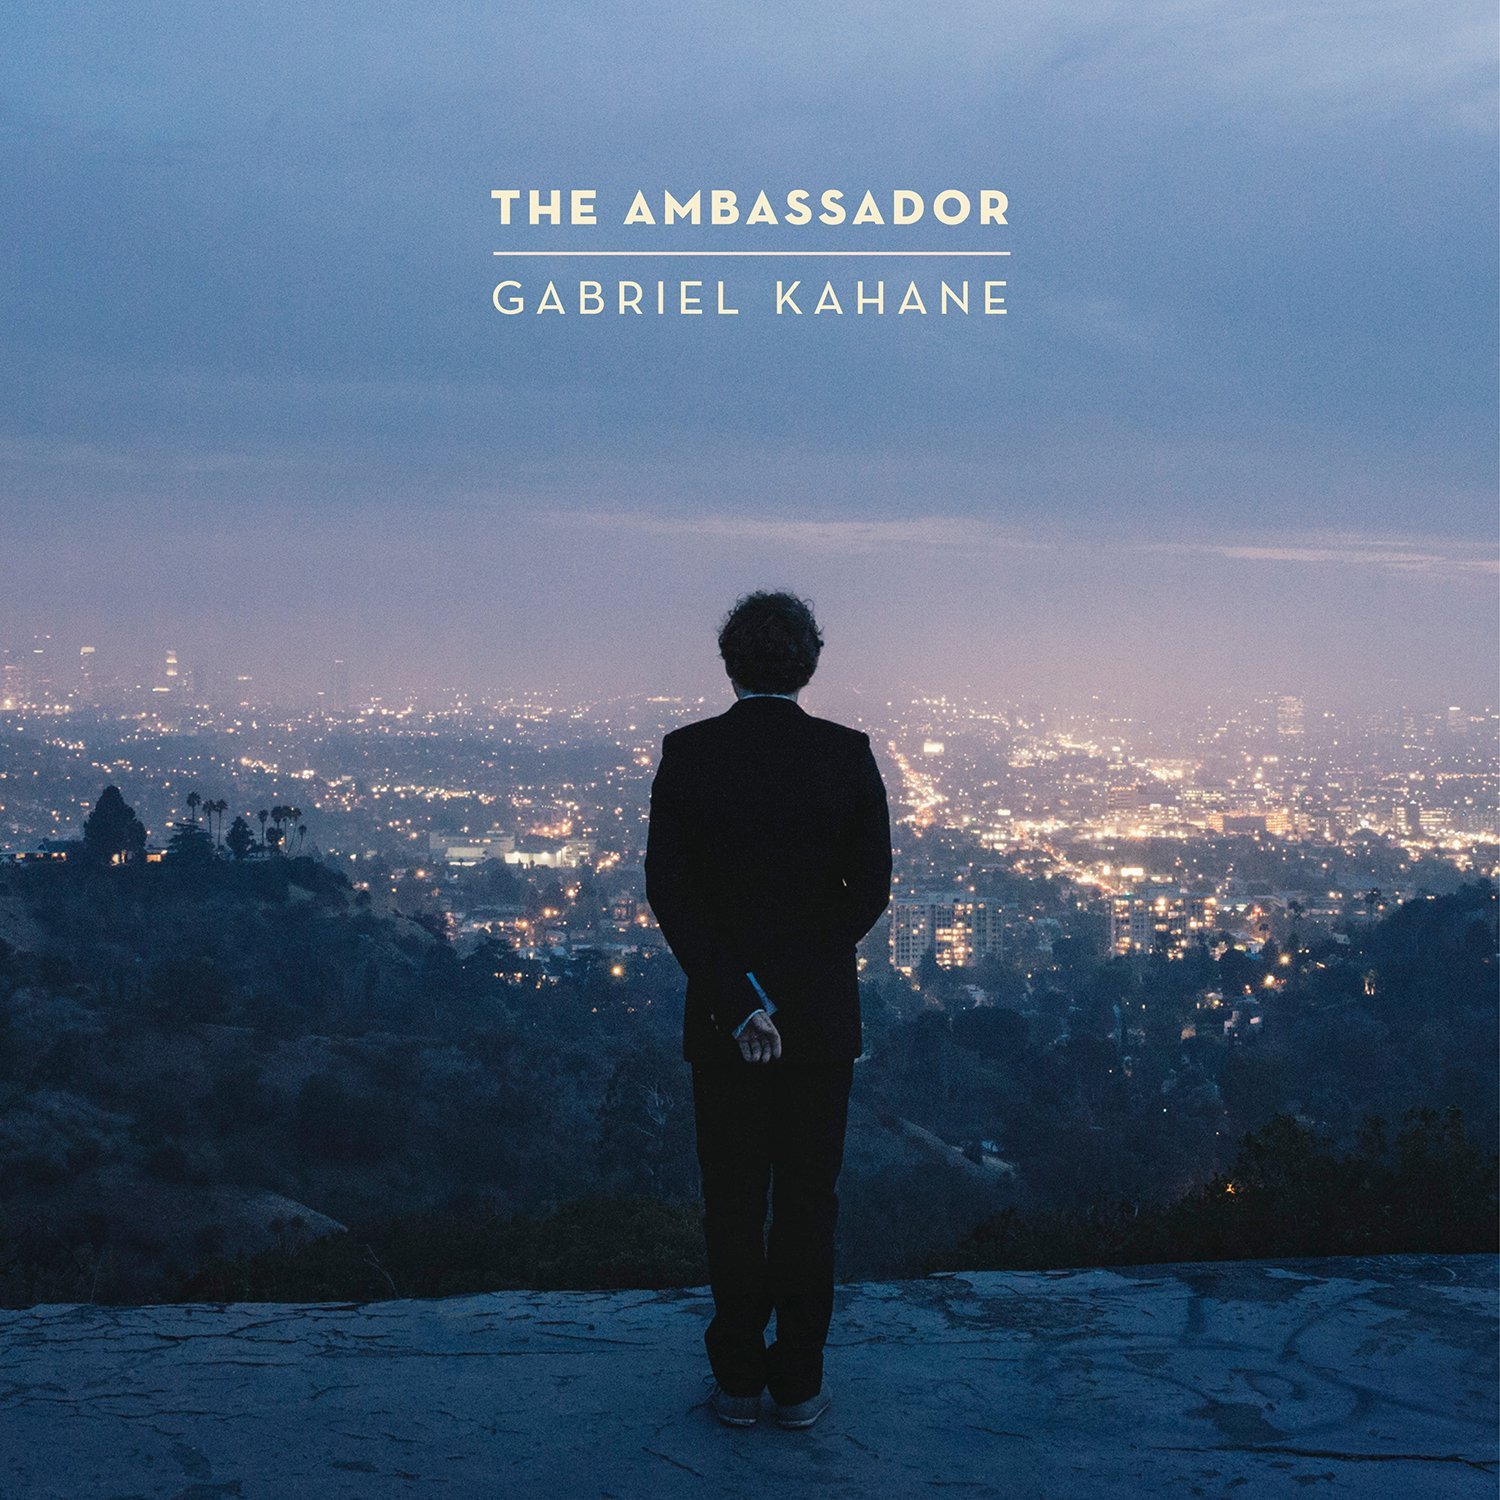 Gabriel Kahane's album, The Ambassador, is out now.